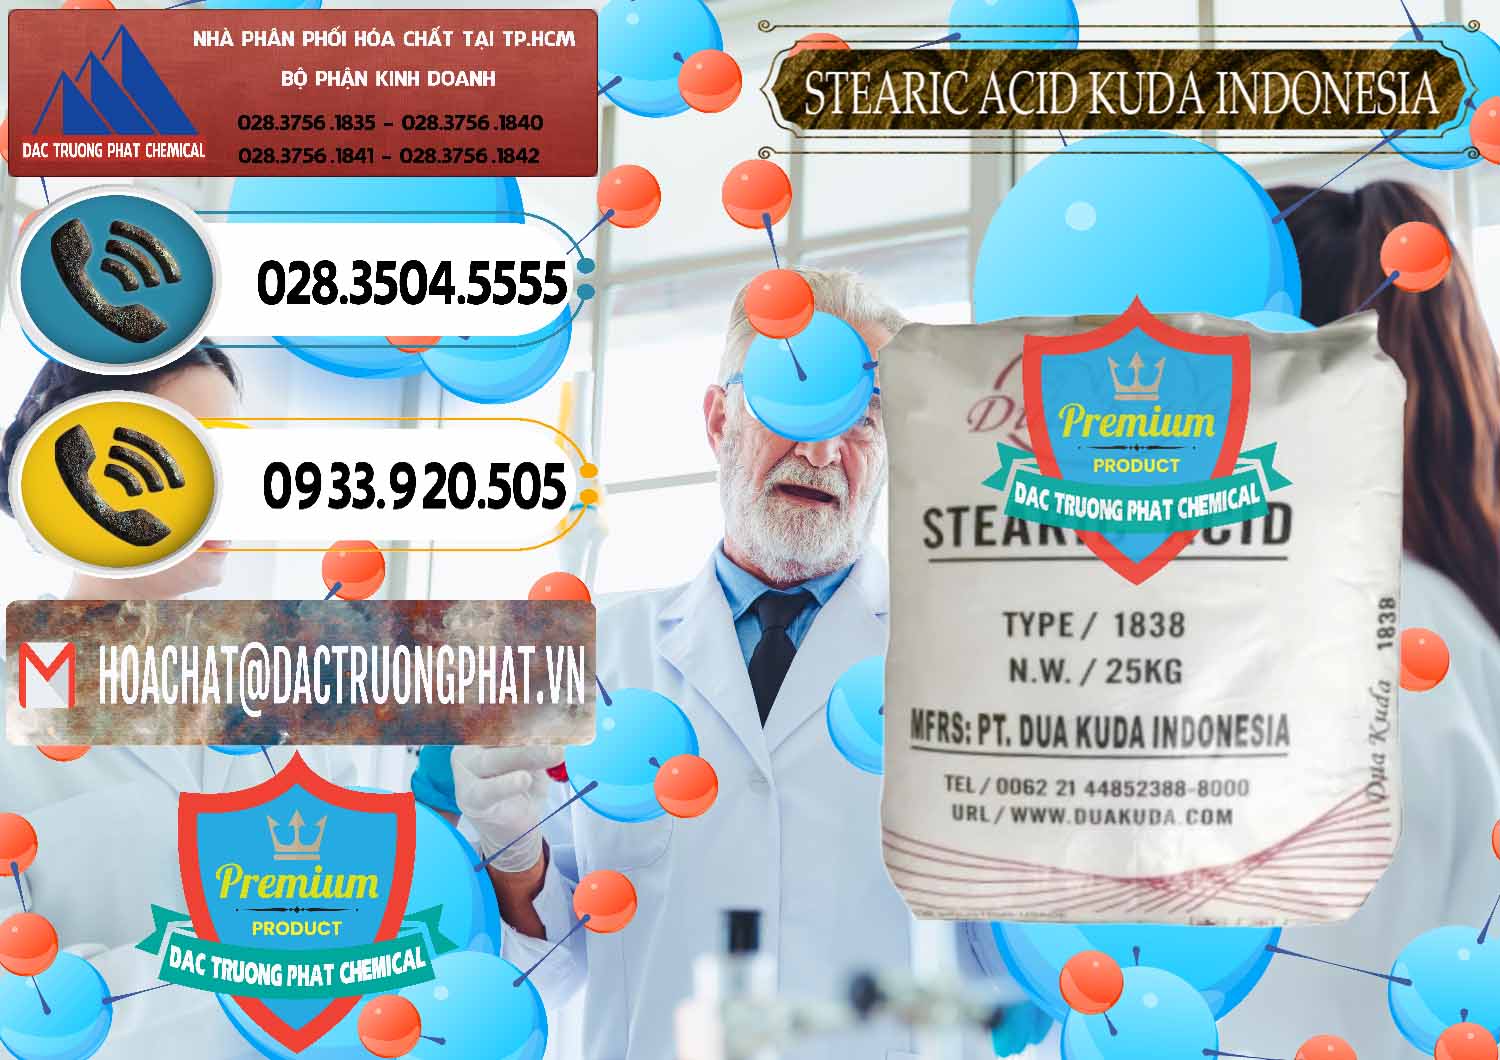 Đơn vị chuyên cung ứng & bán Axit Stearic - Stearic Acid Dua Kuda Indonesia - 0388 - Cty chuyên phân phối & kinh doanh hóa chất tại TP.HCM - hoachatdetnhuom.vn